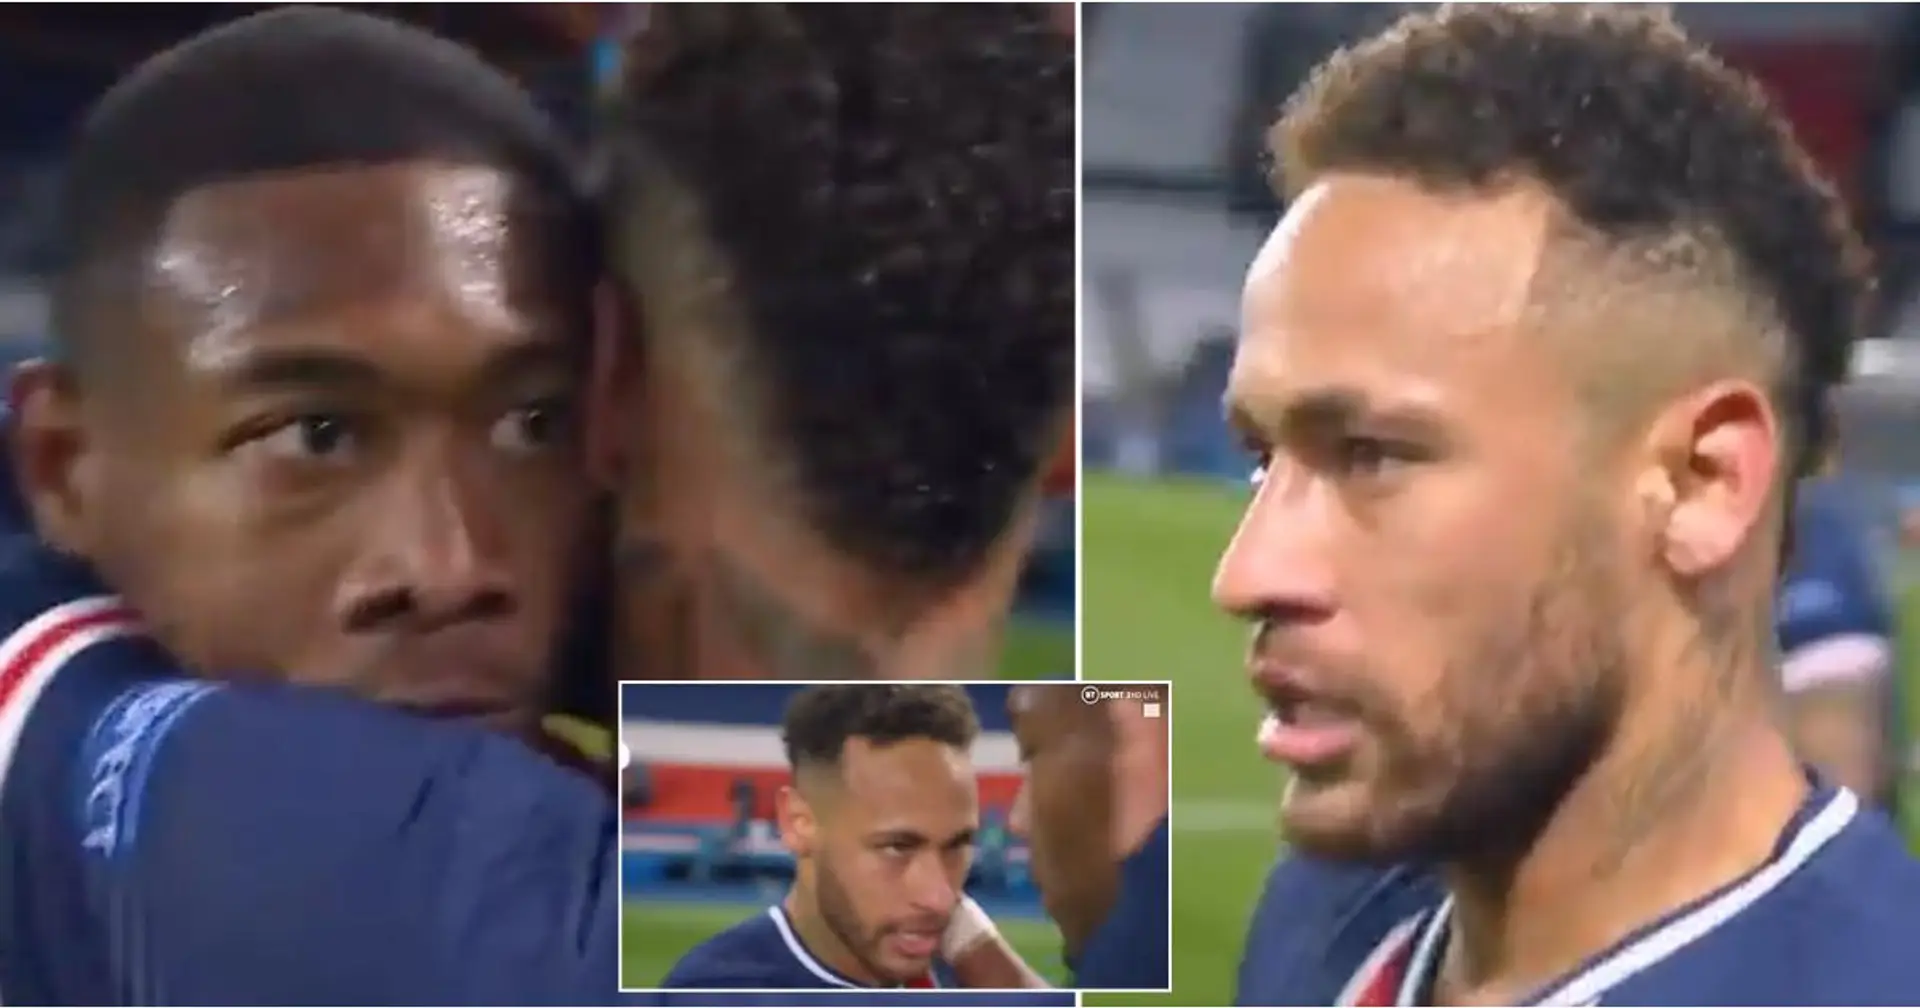 Bellissimo momento tra Neymar e David Alaba catturato dalla telecamera - c'è una storia dietro questo gesto